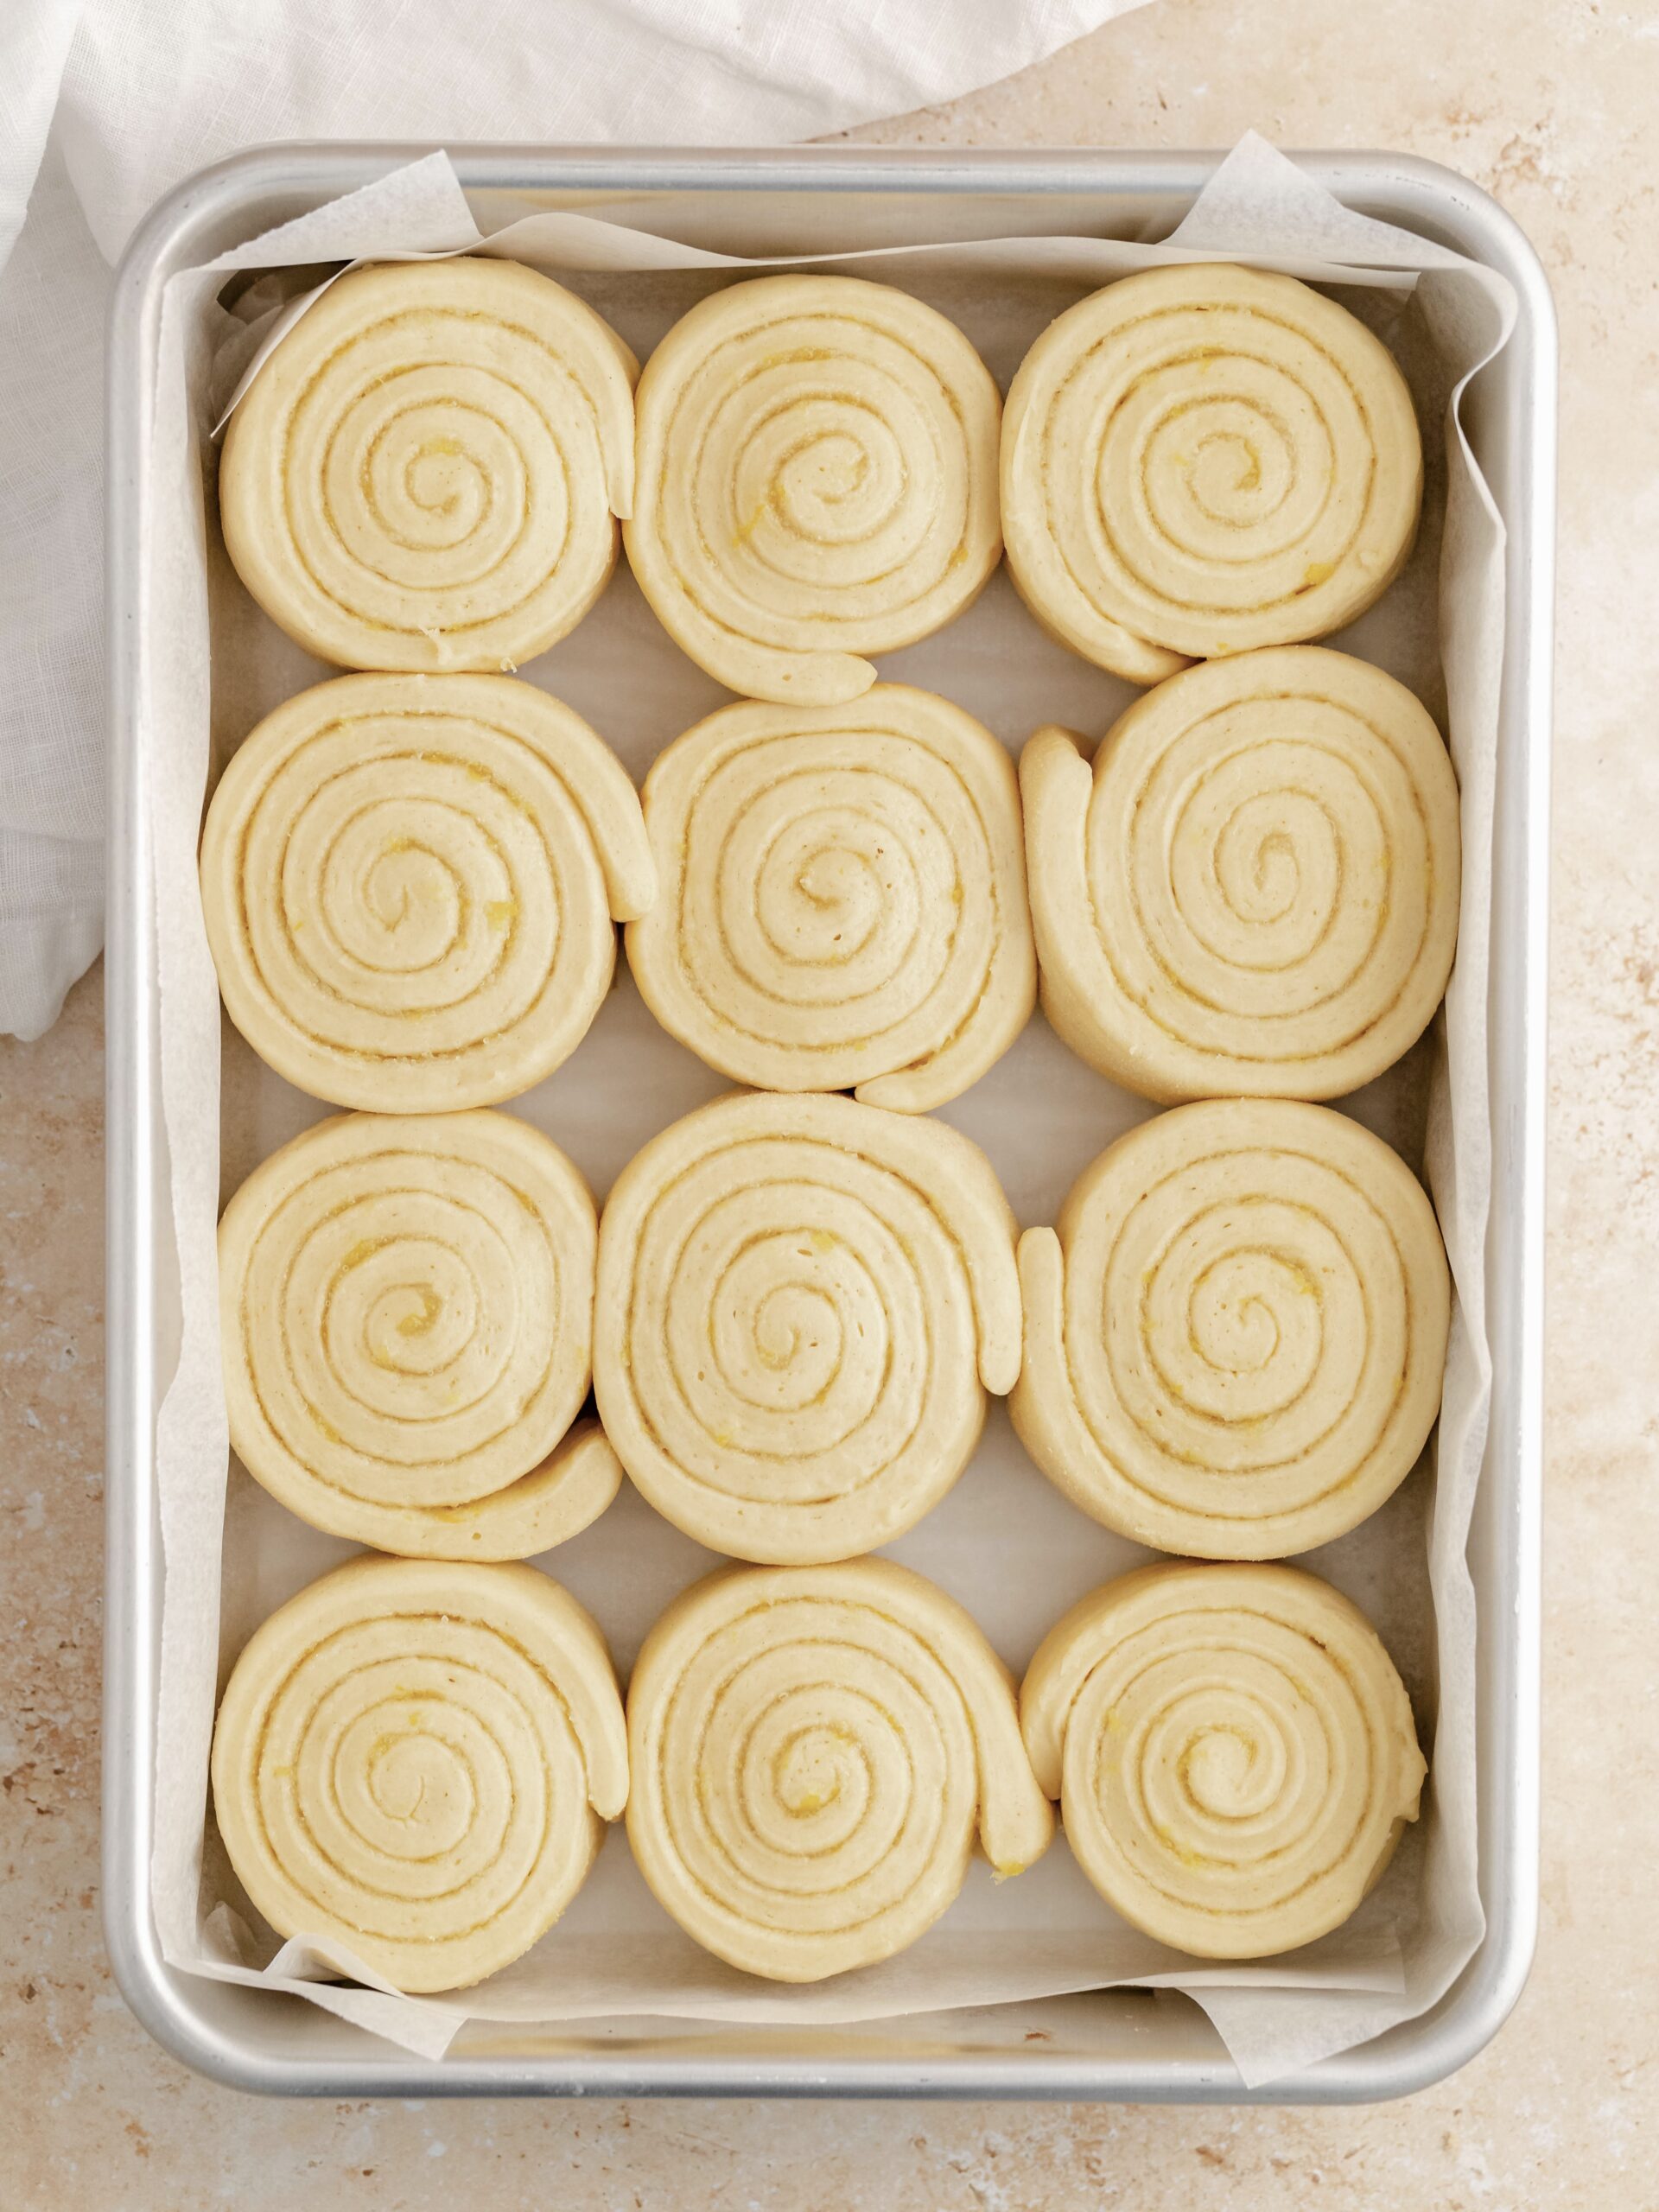 Lemon rolls in the baking tray.